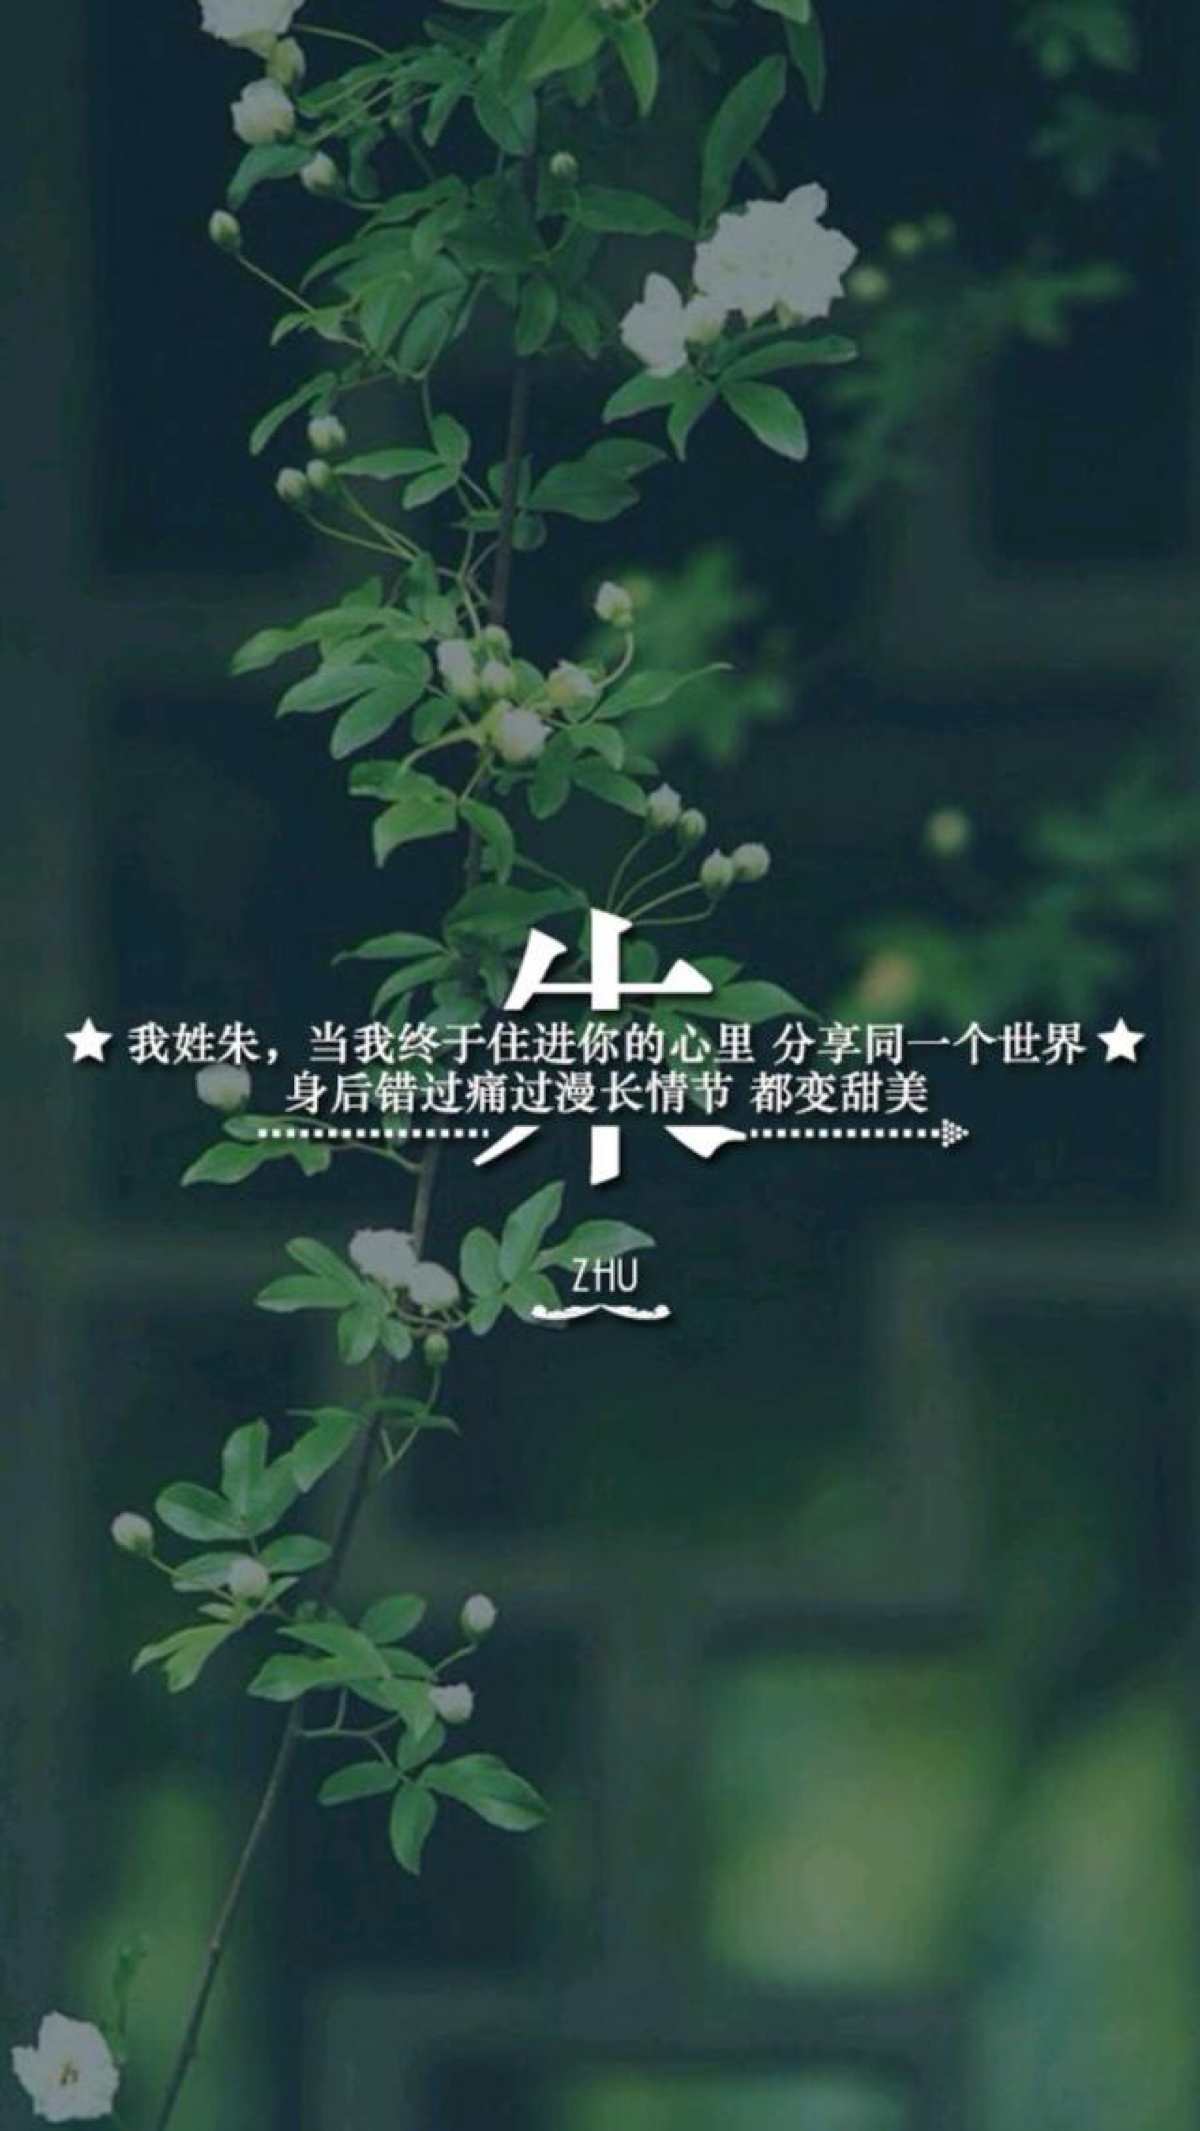 苹果6"文字"壁纸"姓氏